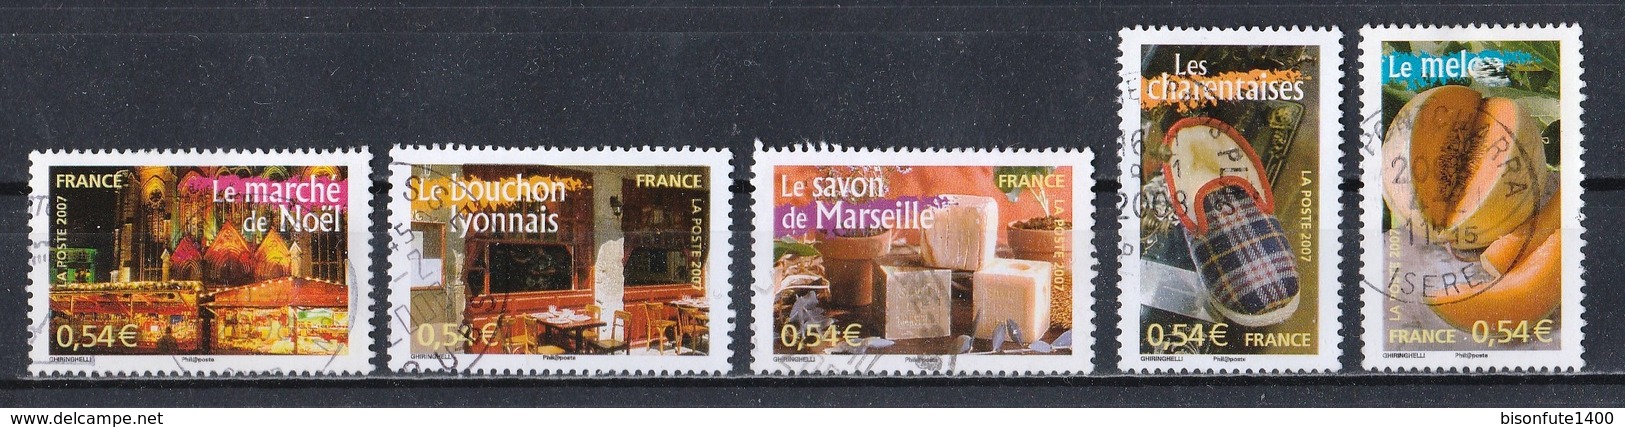 France 2007 : Timbres Yvert & Tellier N° 4094 - 4095 - 4096 - 4097 - 4098 - 4099 - 4100 - 4101 - 4102 Et 4103 Avec Obli. - Usati